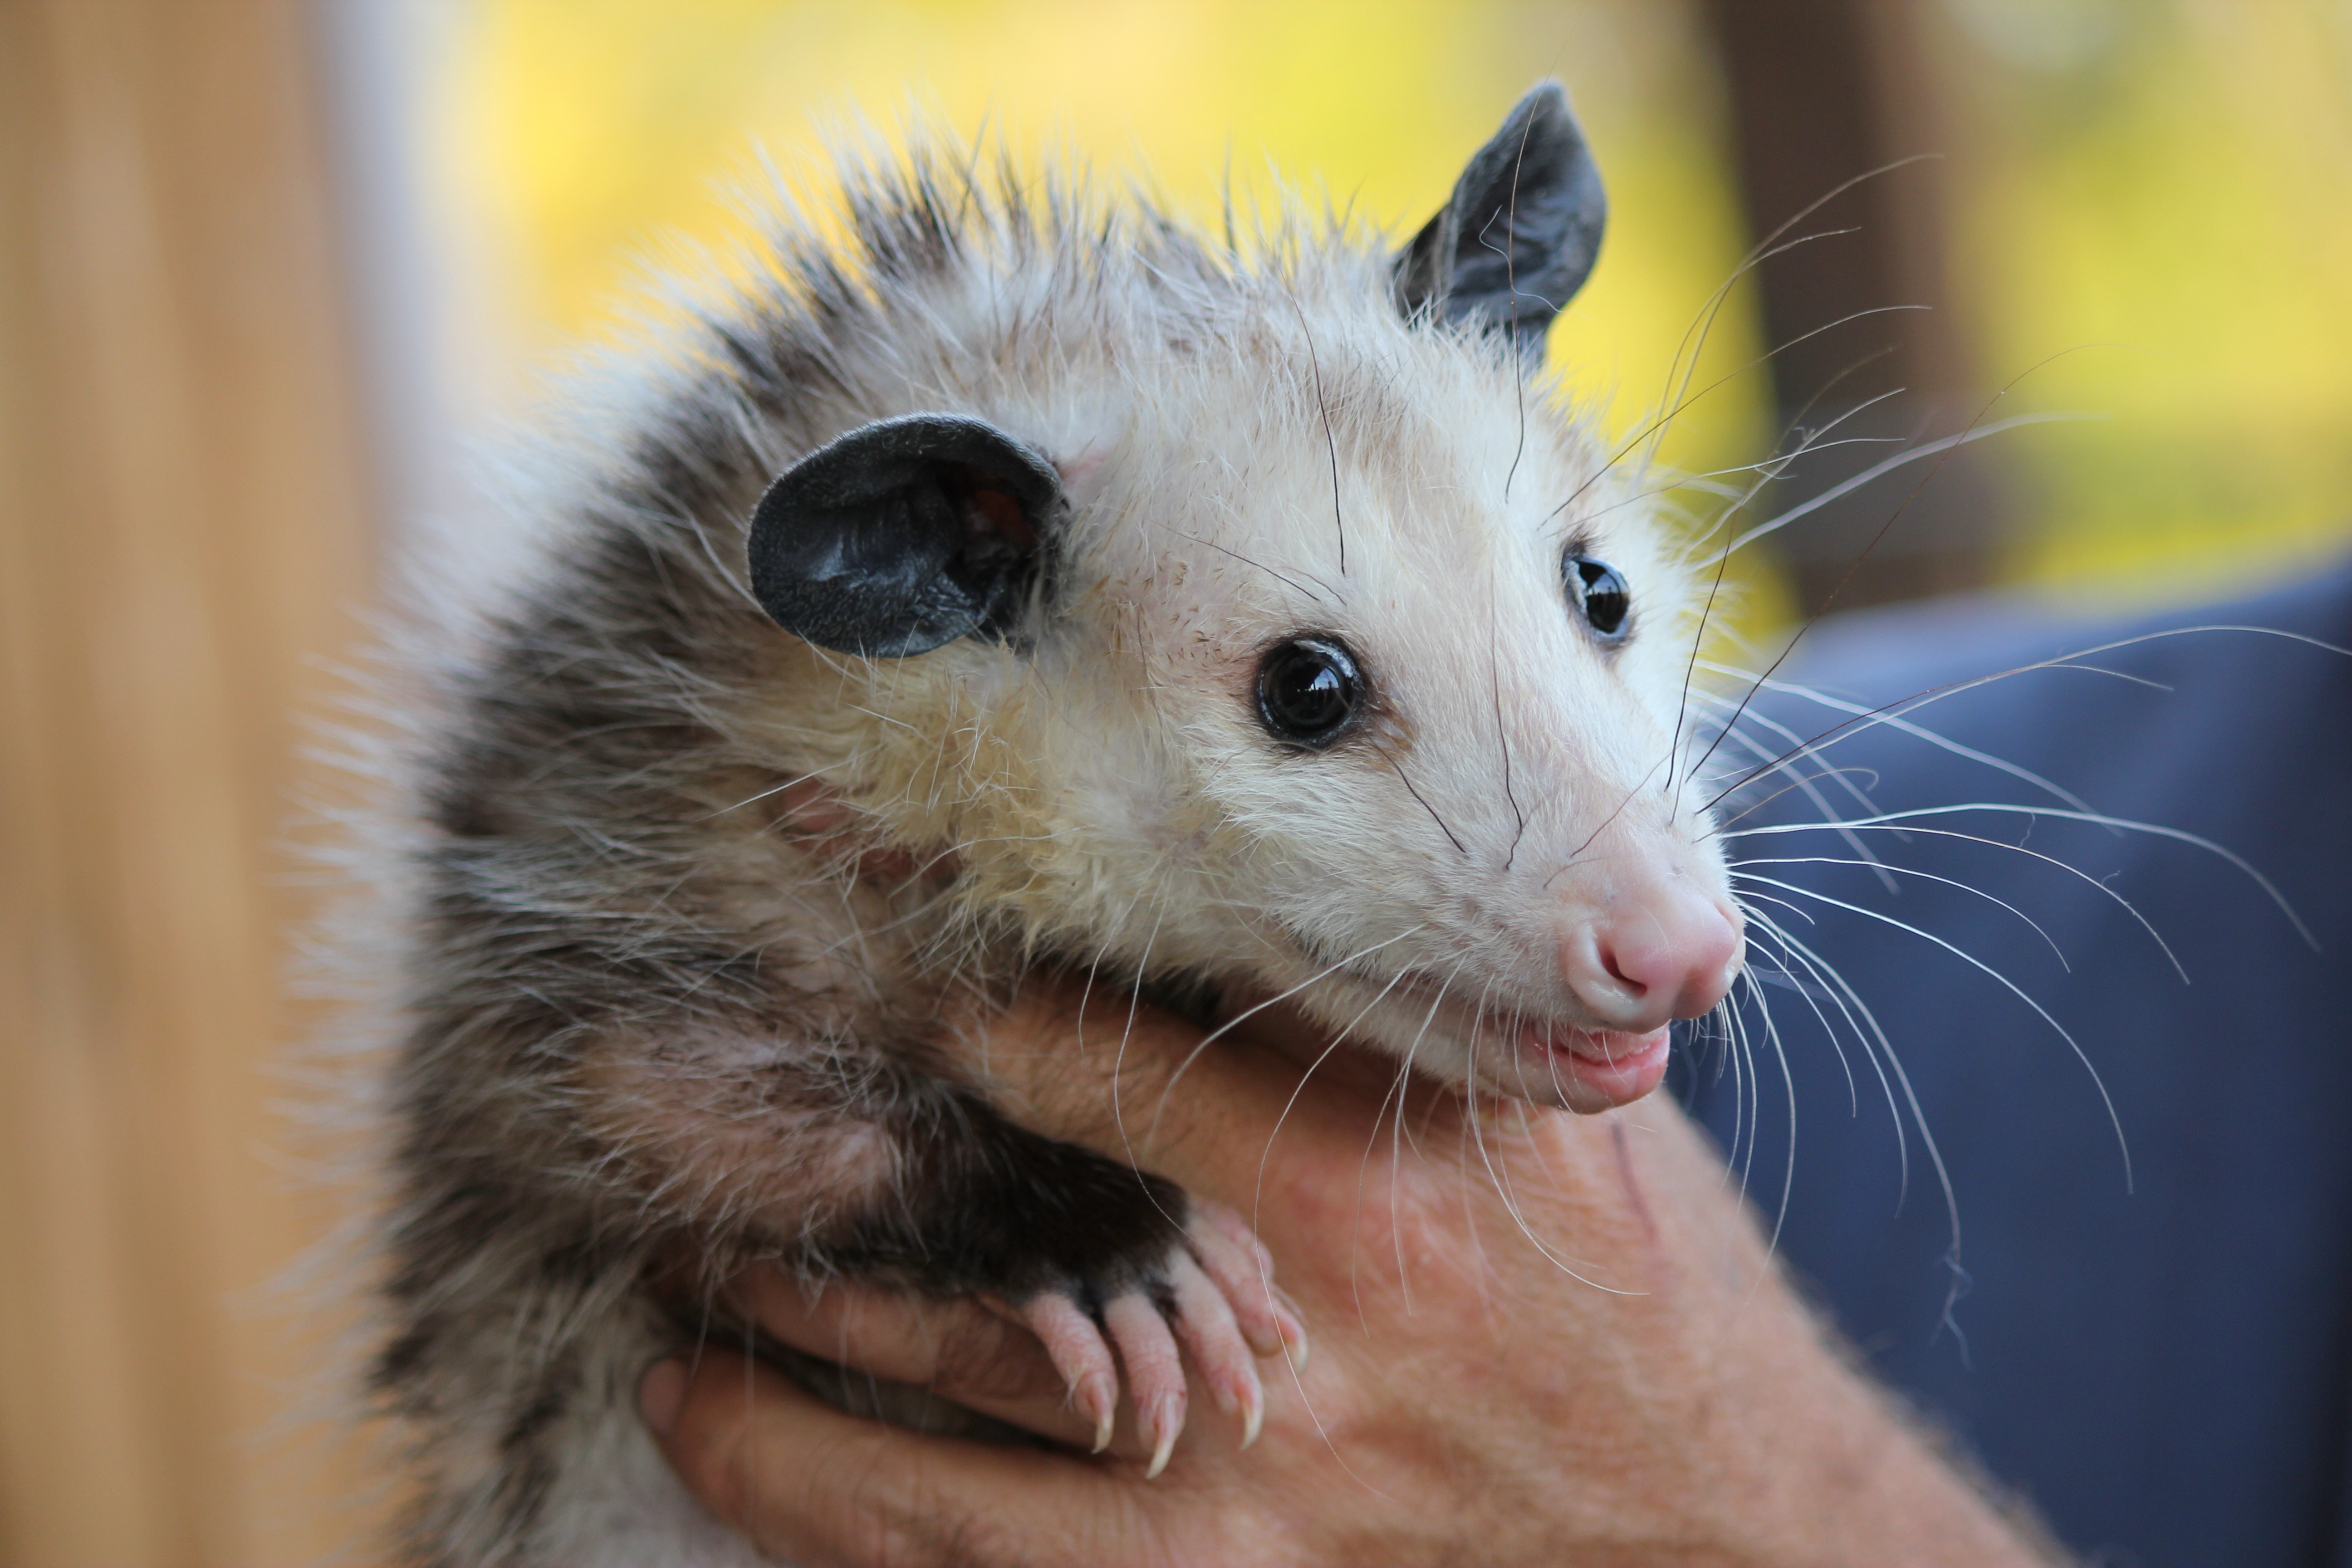 Rodent, Possum, Mammal, Animal, Opossum, one animal, human hand